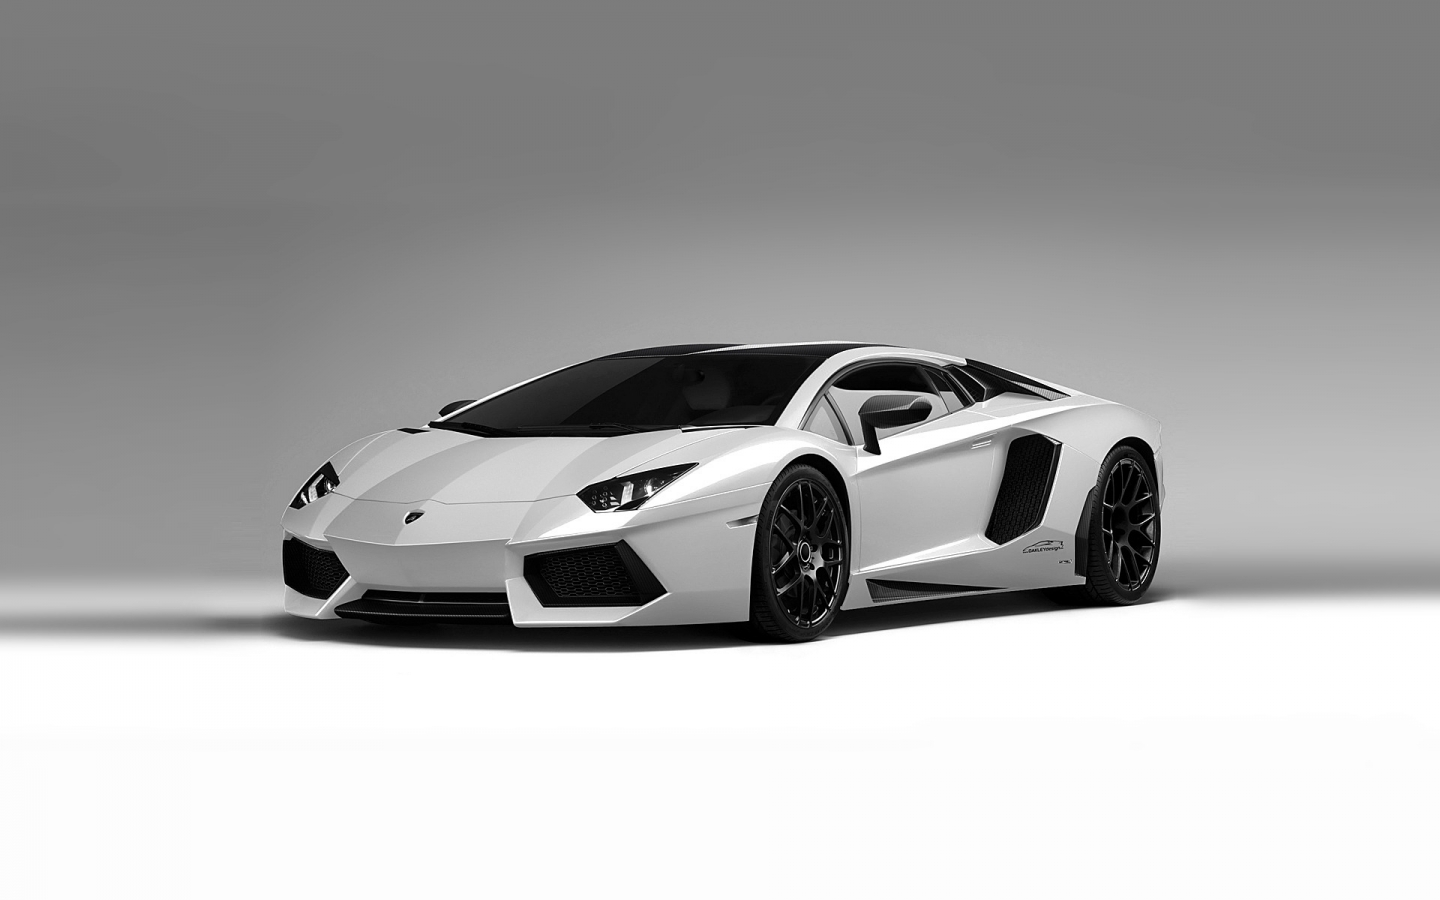 Lamborghini Aventador White for 1440 x 900 widescreen resolution